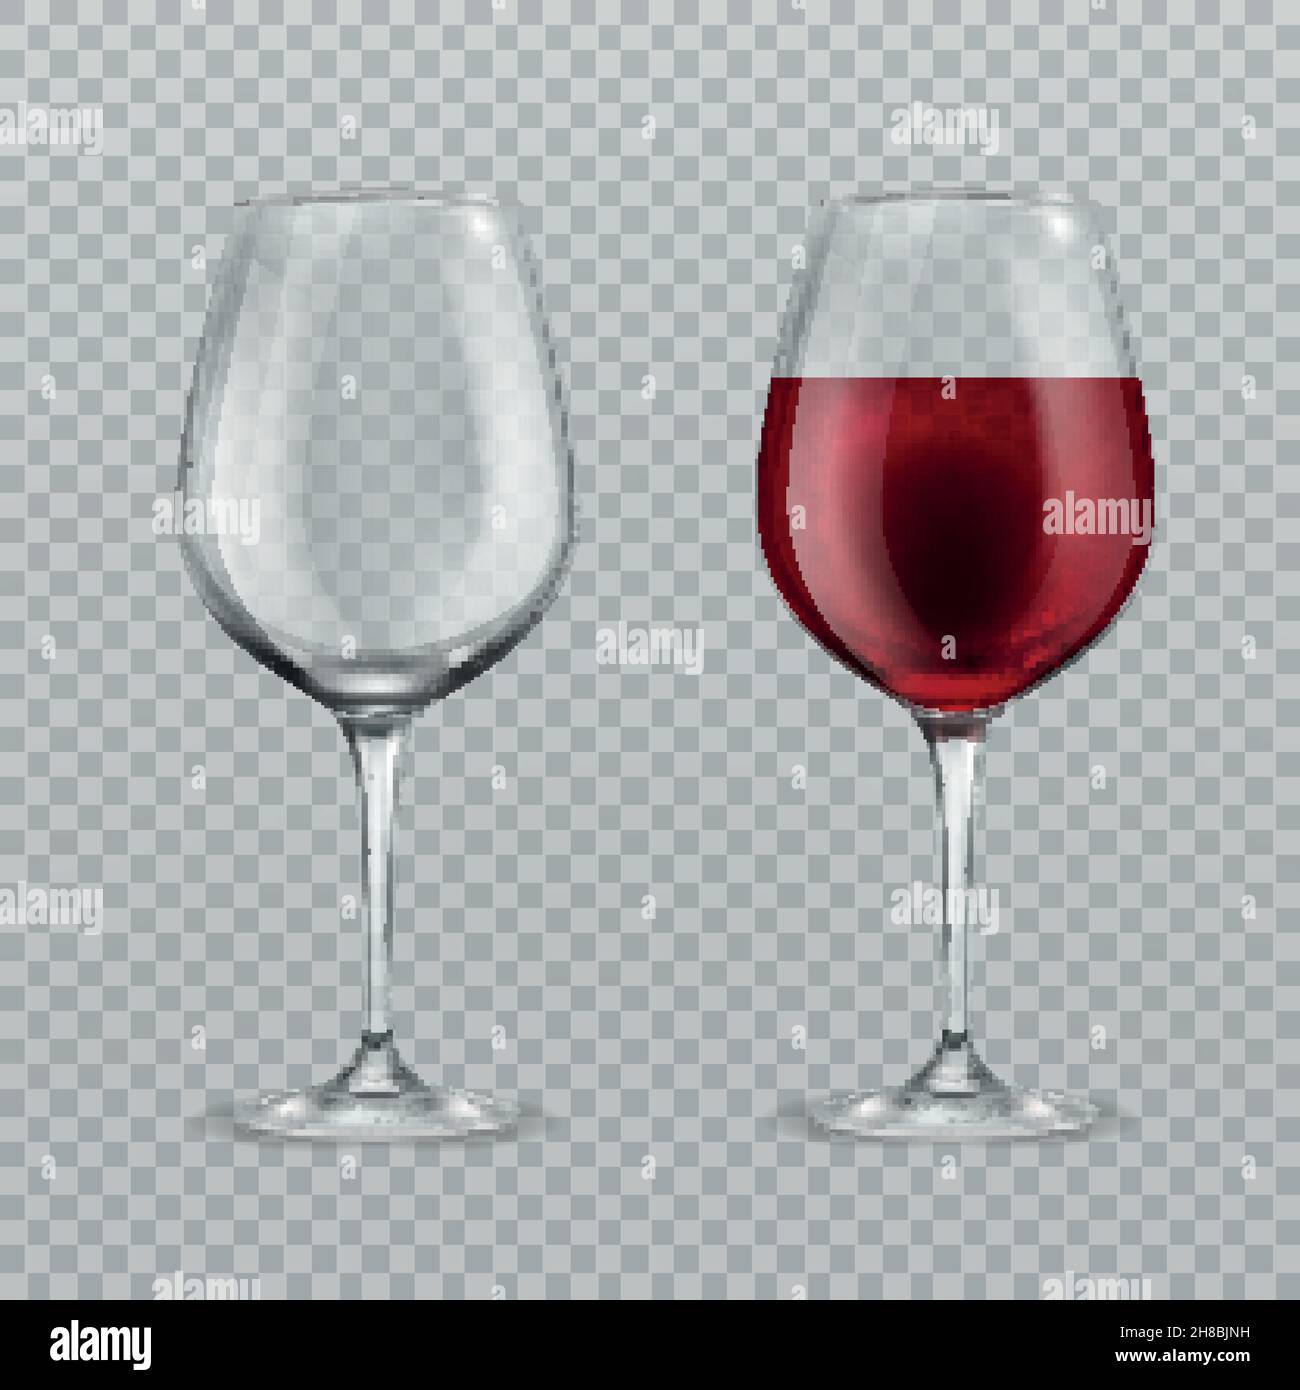 Lunettes de vin réalistes.Illustration vectorielle de verre vide et avec des lunettes de vin rouge isolées Illustration de Vecteur